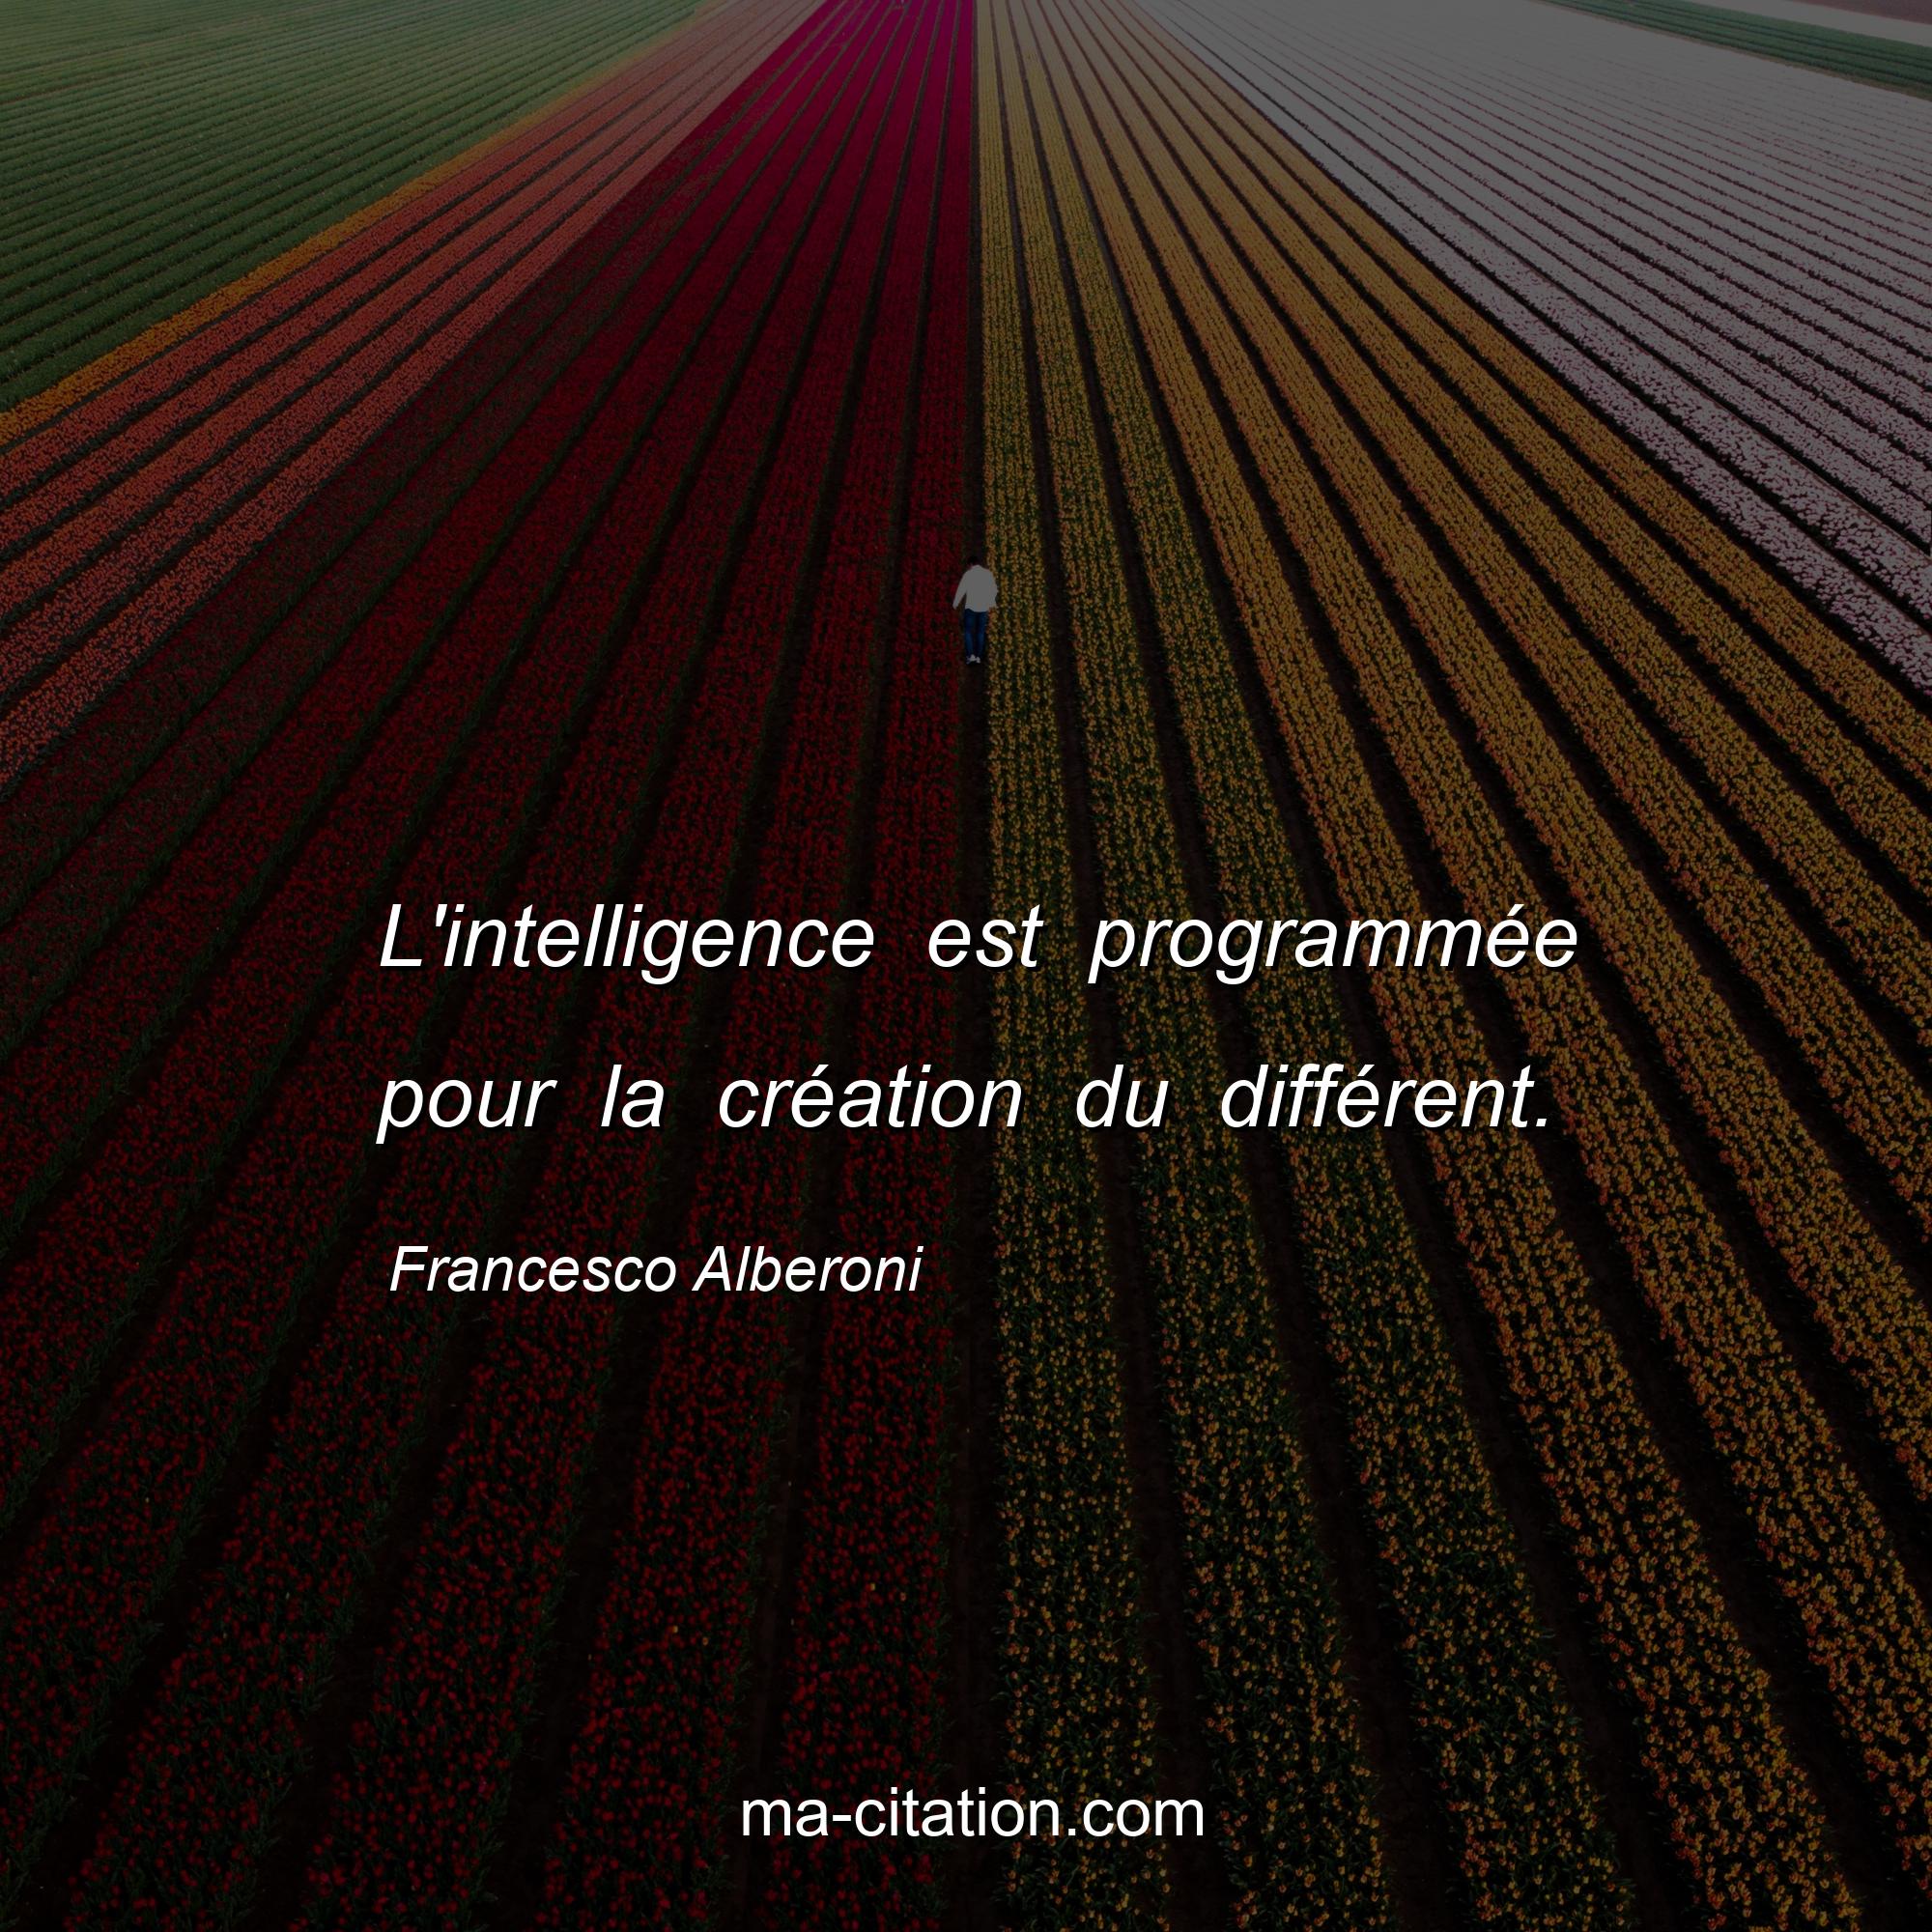 Francesco Alberoni : L'intelligence est programmée pour la création du différent.